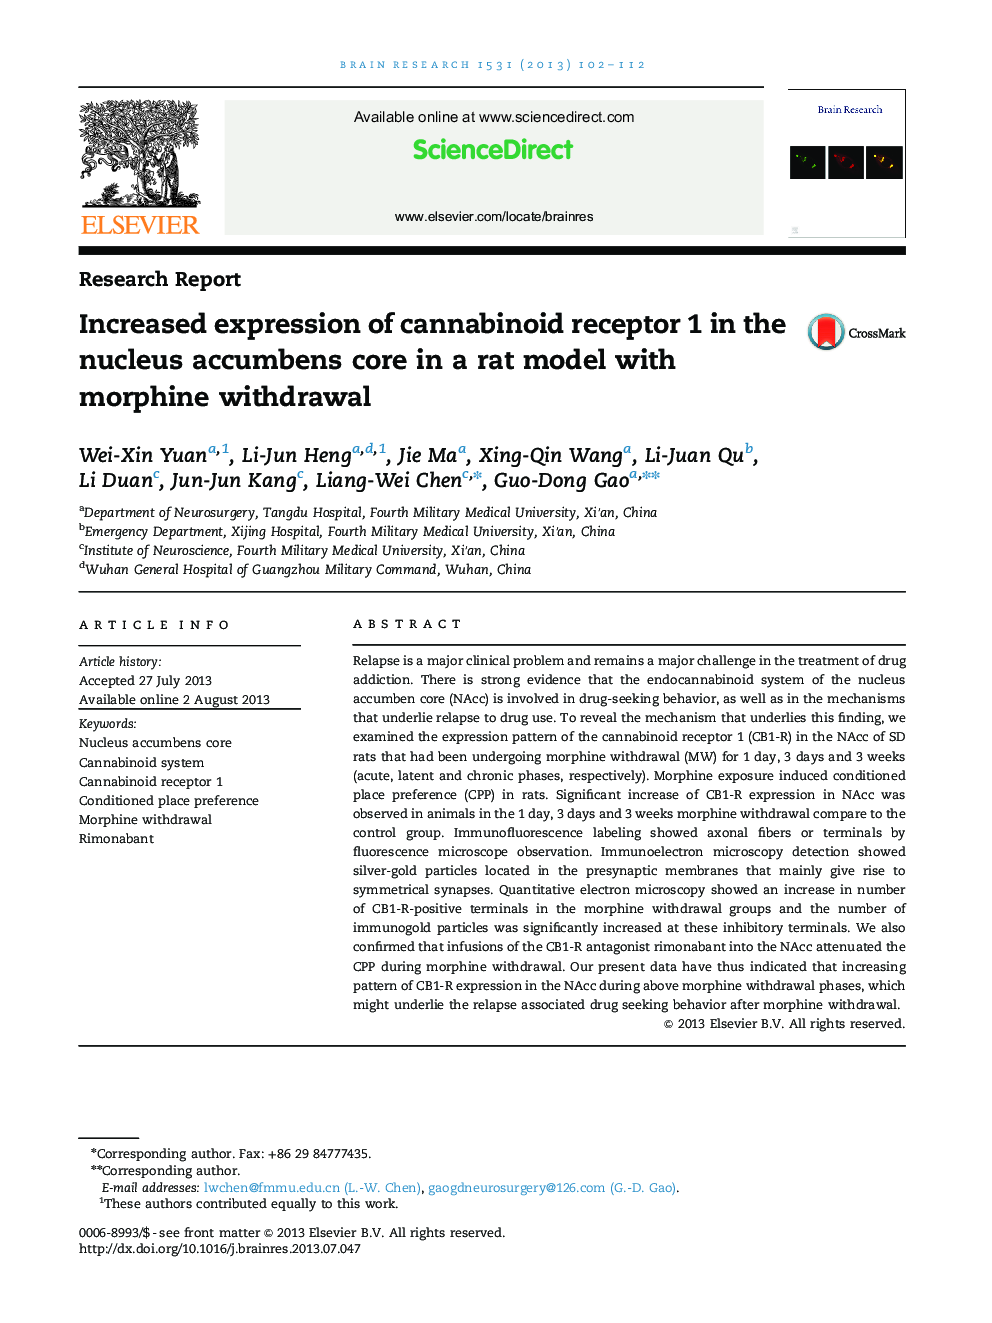 گزارش تحقیق افزایش بیان گیرنده کانابینوئید 1 در هسته اکوببن هسته در یک مدل موش با حذف مرفین 